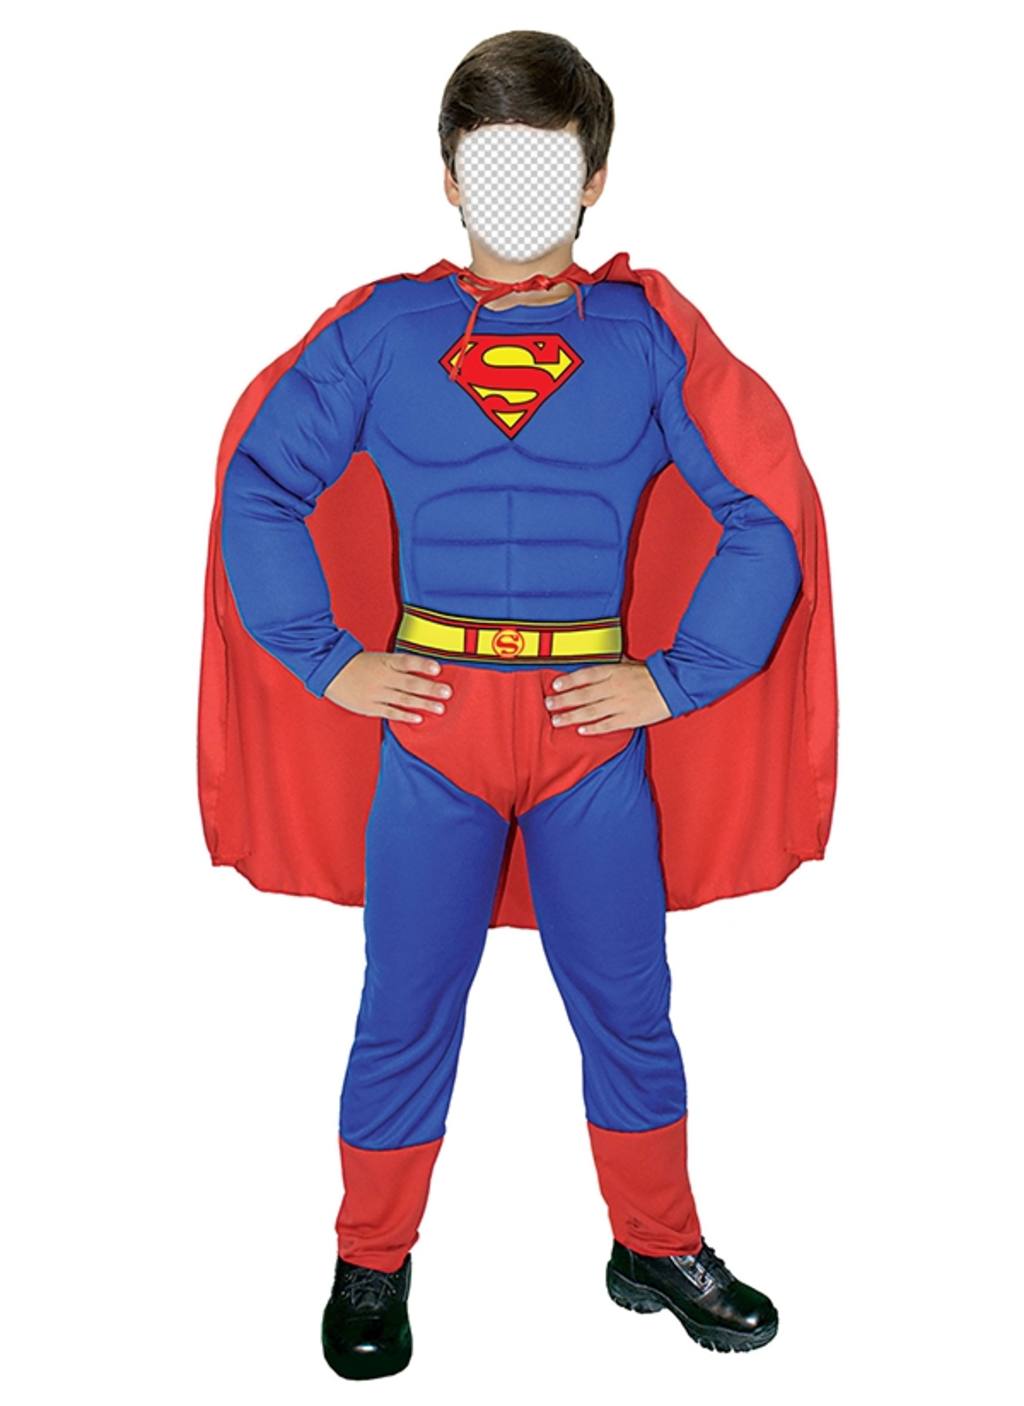 Freie Fotomontage dein Sohn zu verschleiern, wie Superman Ihr Gesicht in einem Superman-Kostüm mit blauen Anzug und roten Umhang Setzen ..